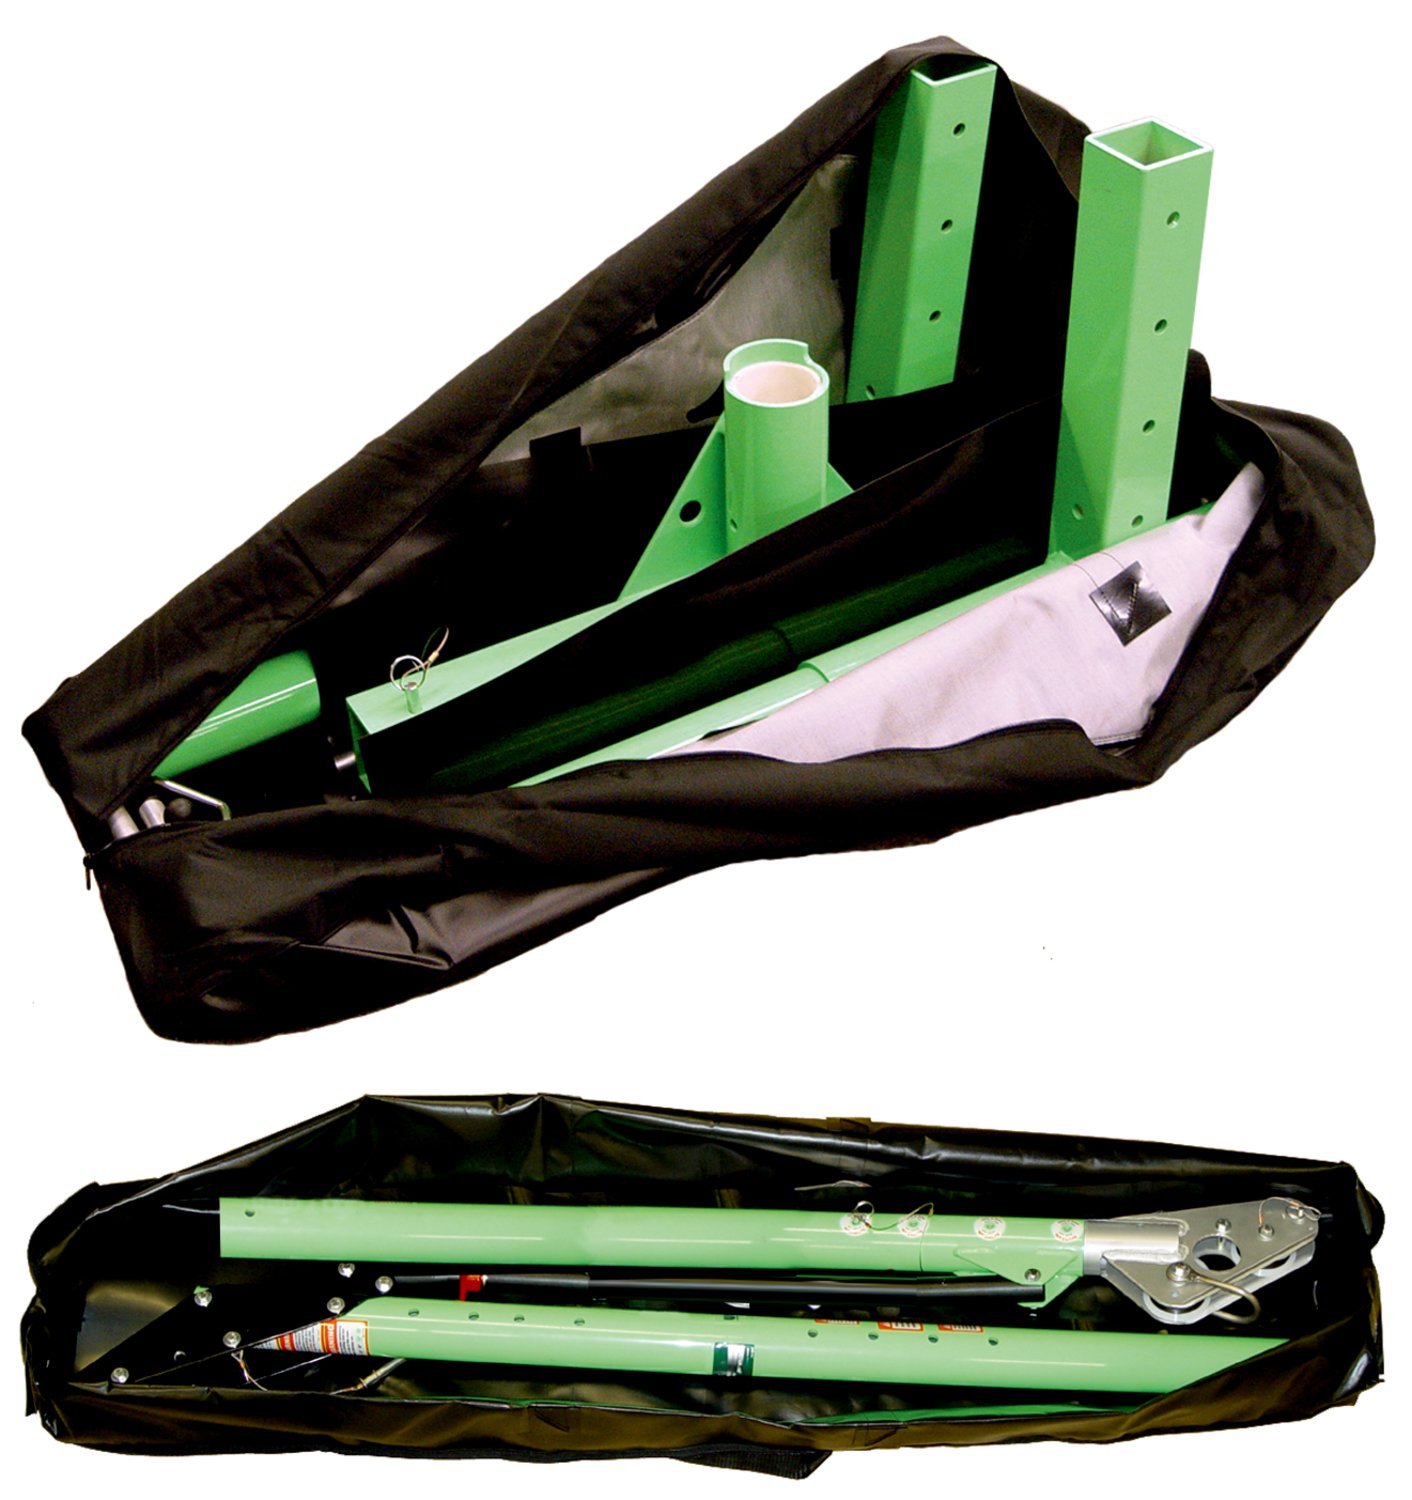 7100280646 - 3M DBI-SALA Confined Space Carrying Bag Set For 5-Piece Davit Hoist 8518513